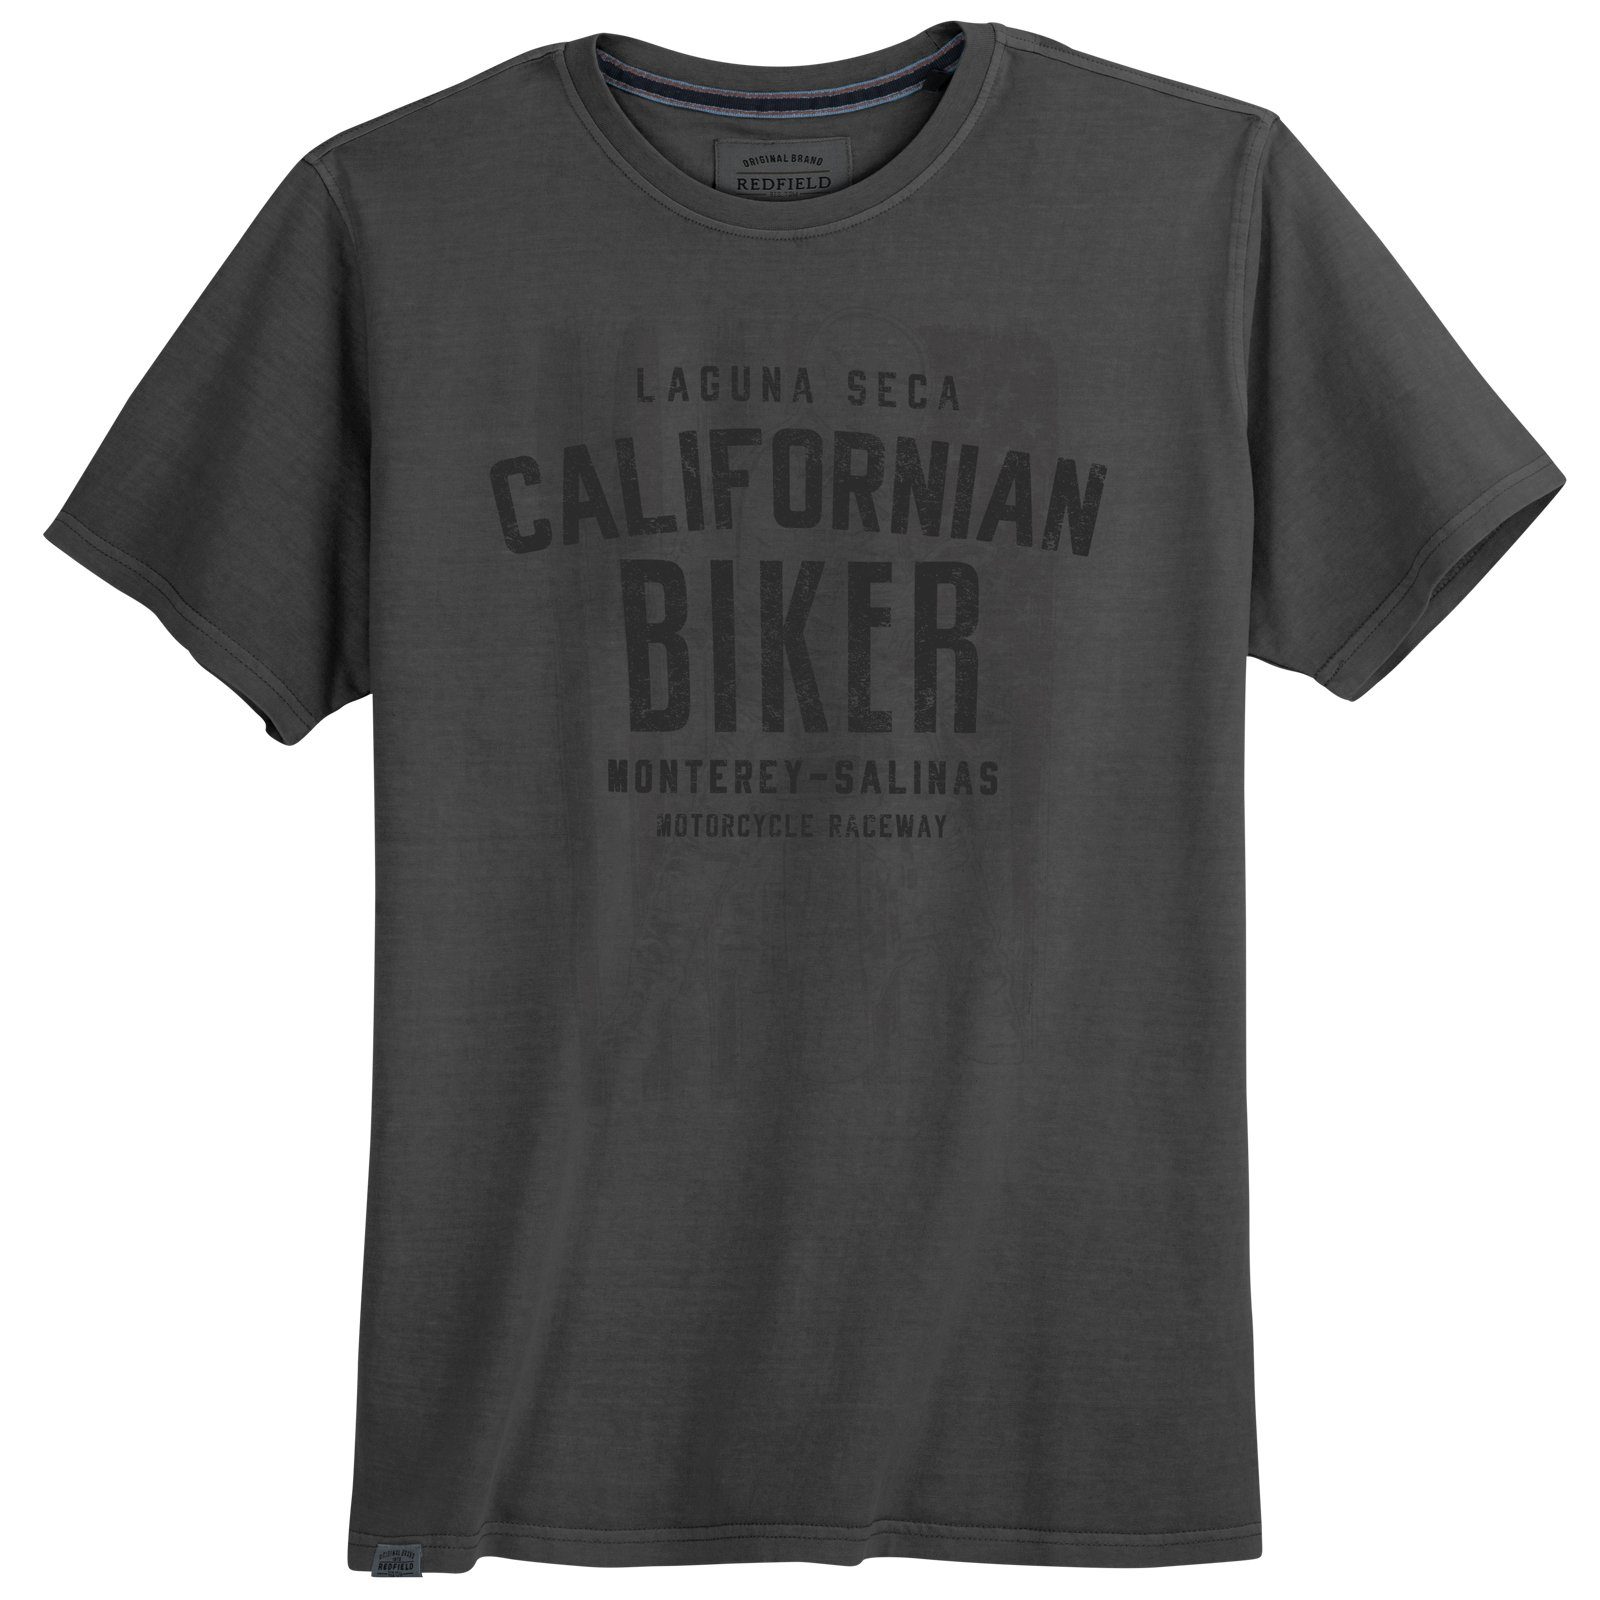 redfield Rundhalsshirt Große Größen Herren T-Shirt schwarz Print Californian Biker Redfield